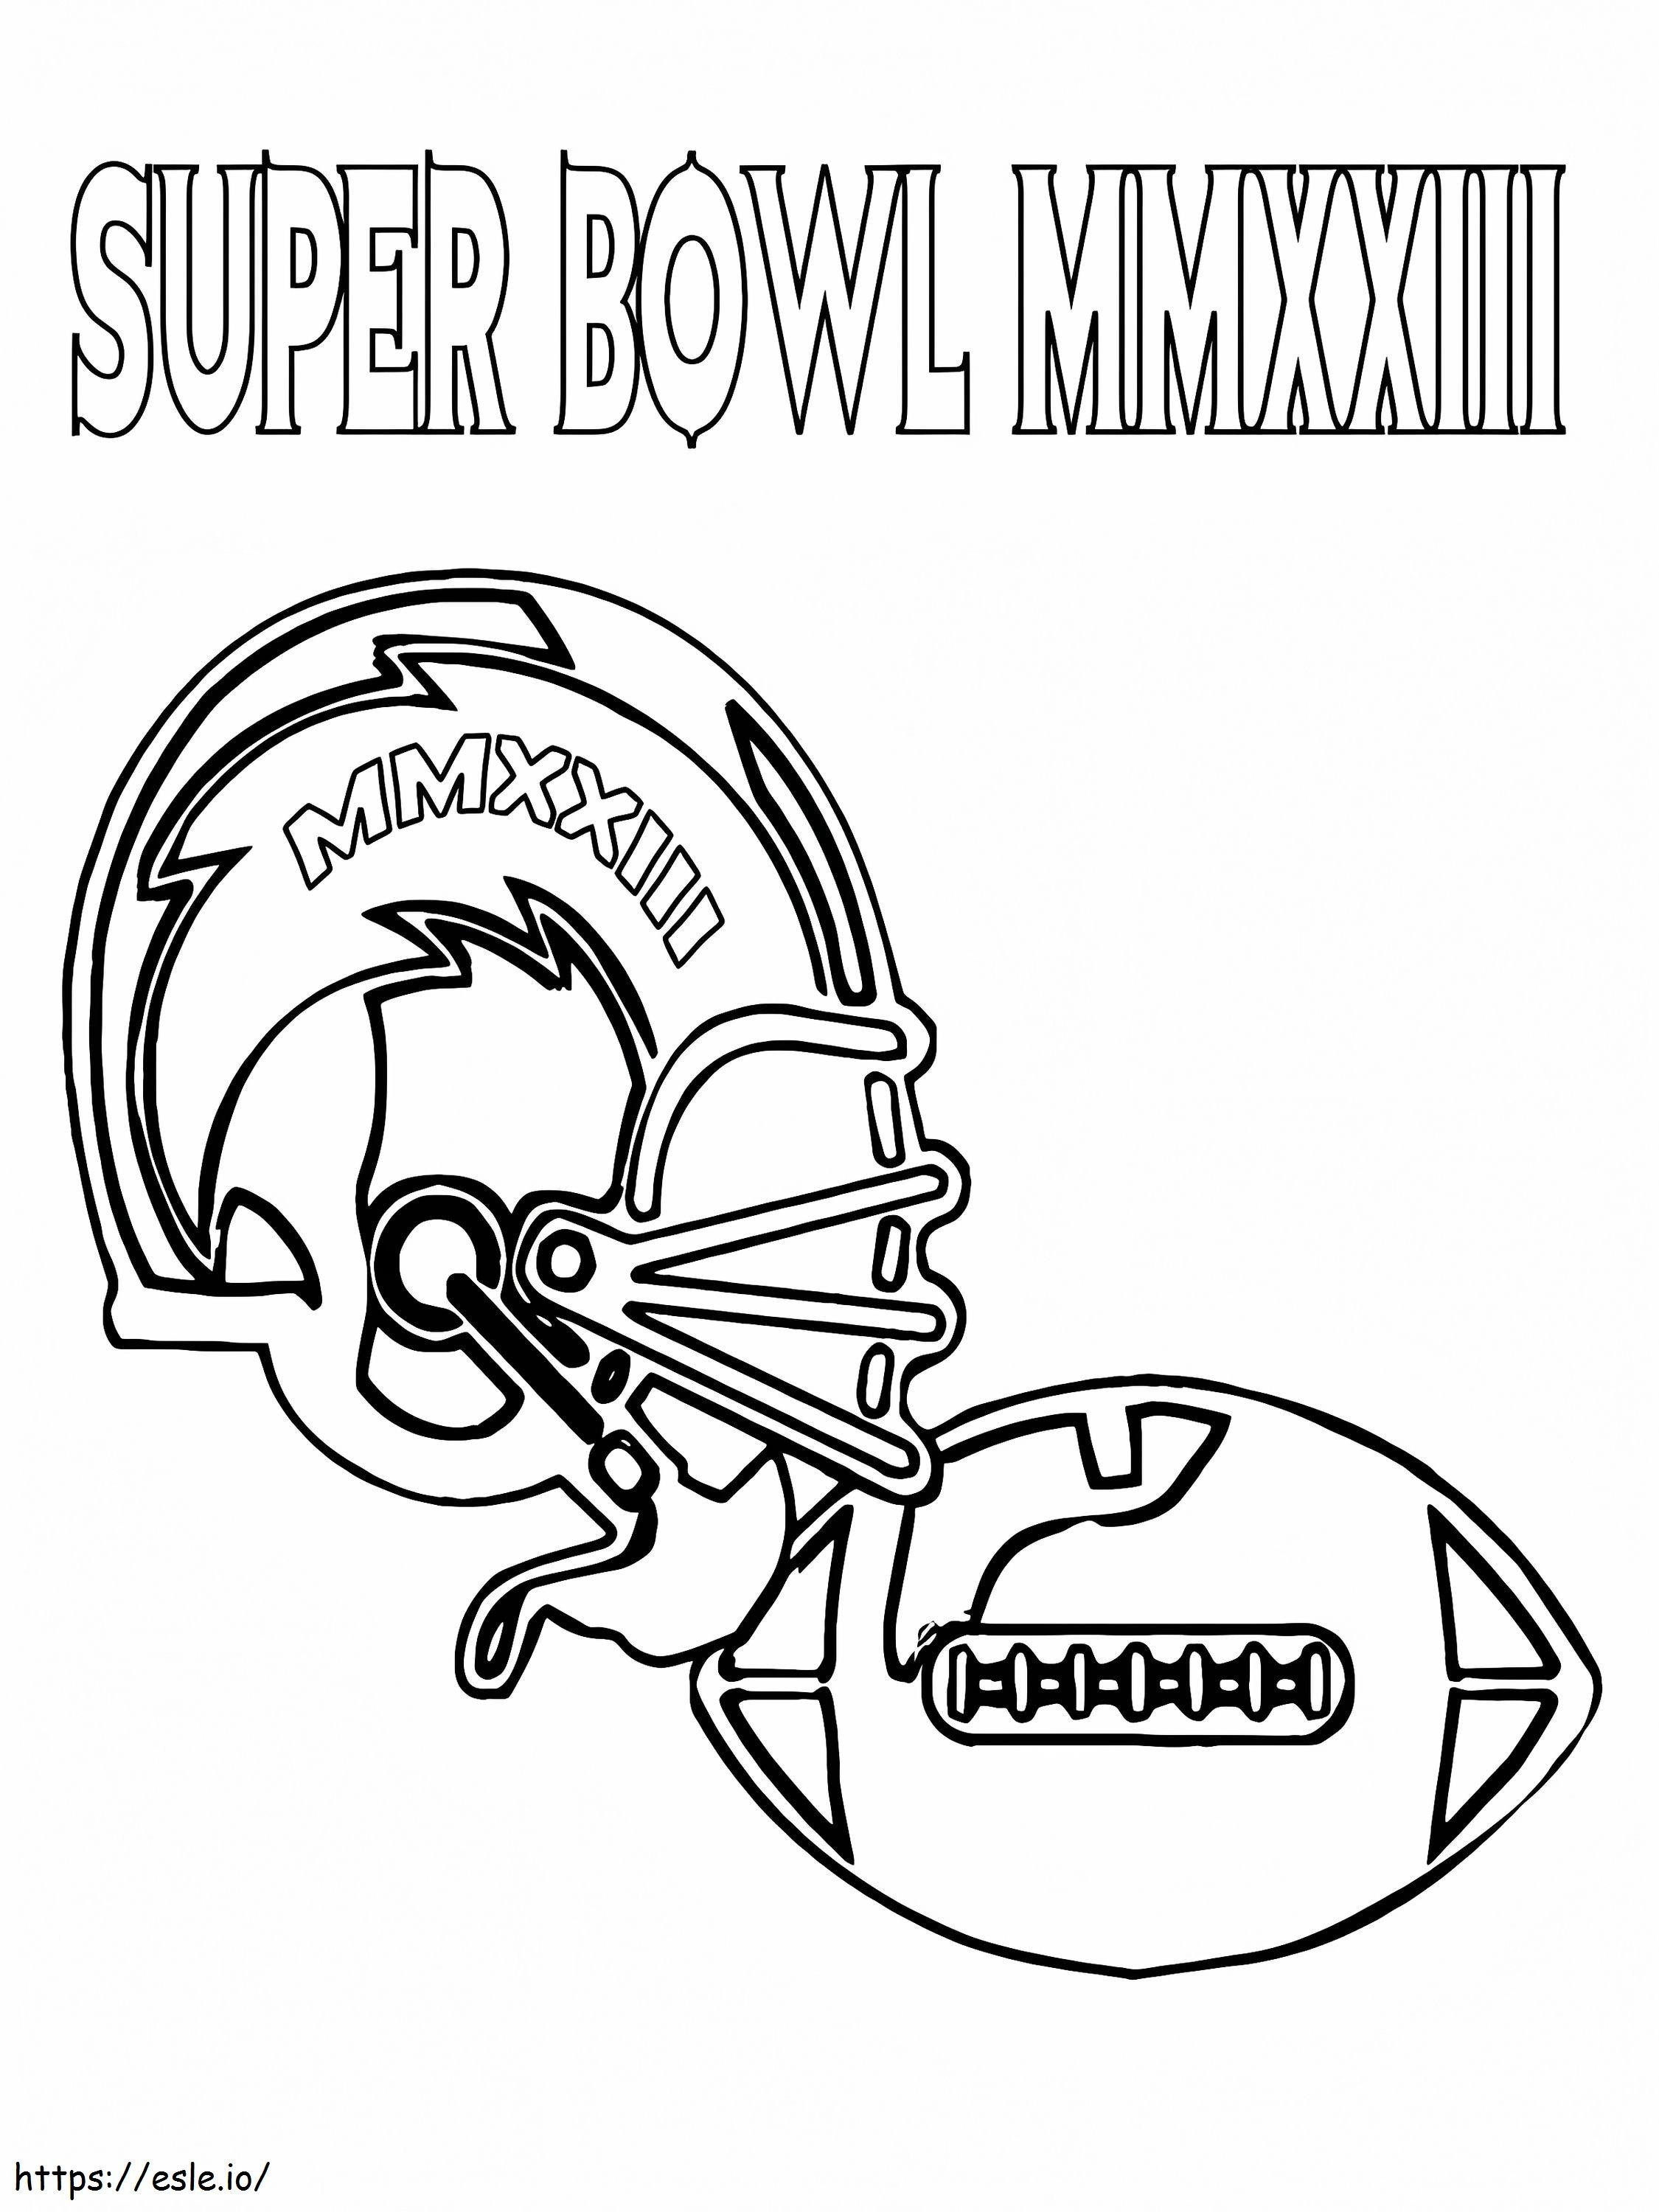 Super Bowl voetbalhelm en bal kleurplaat kleurplaat